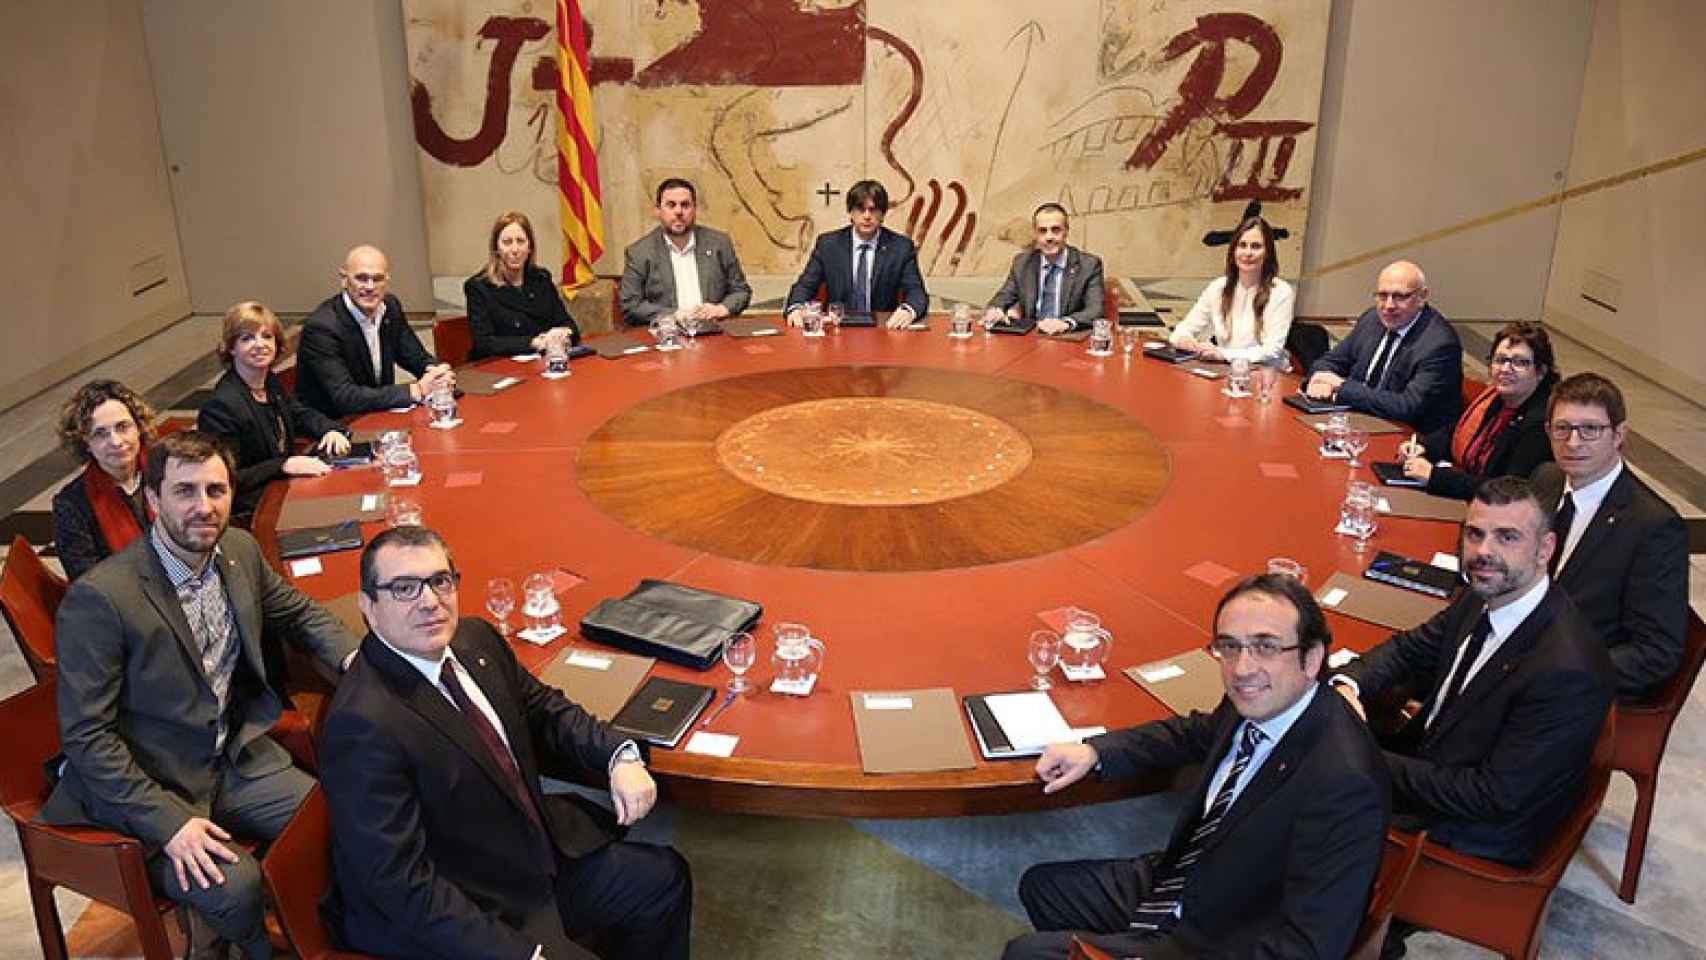 Reunión del Gobierno de Carles Puigdemont.